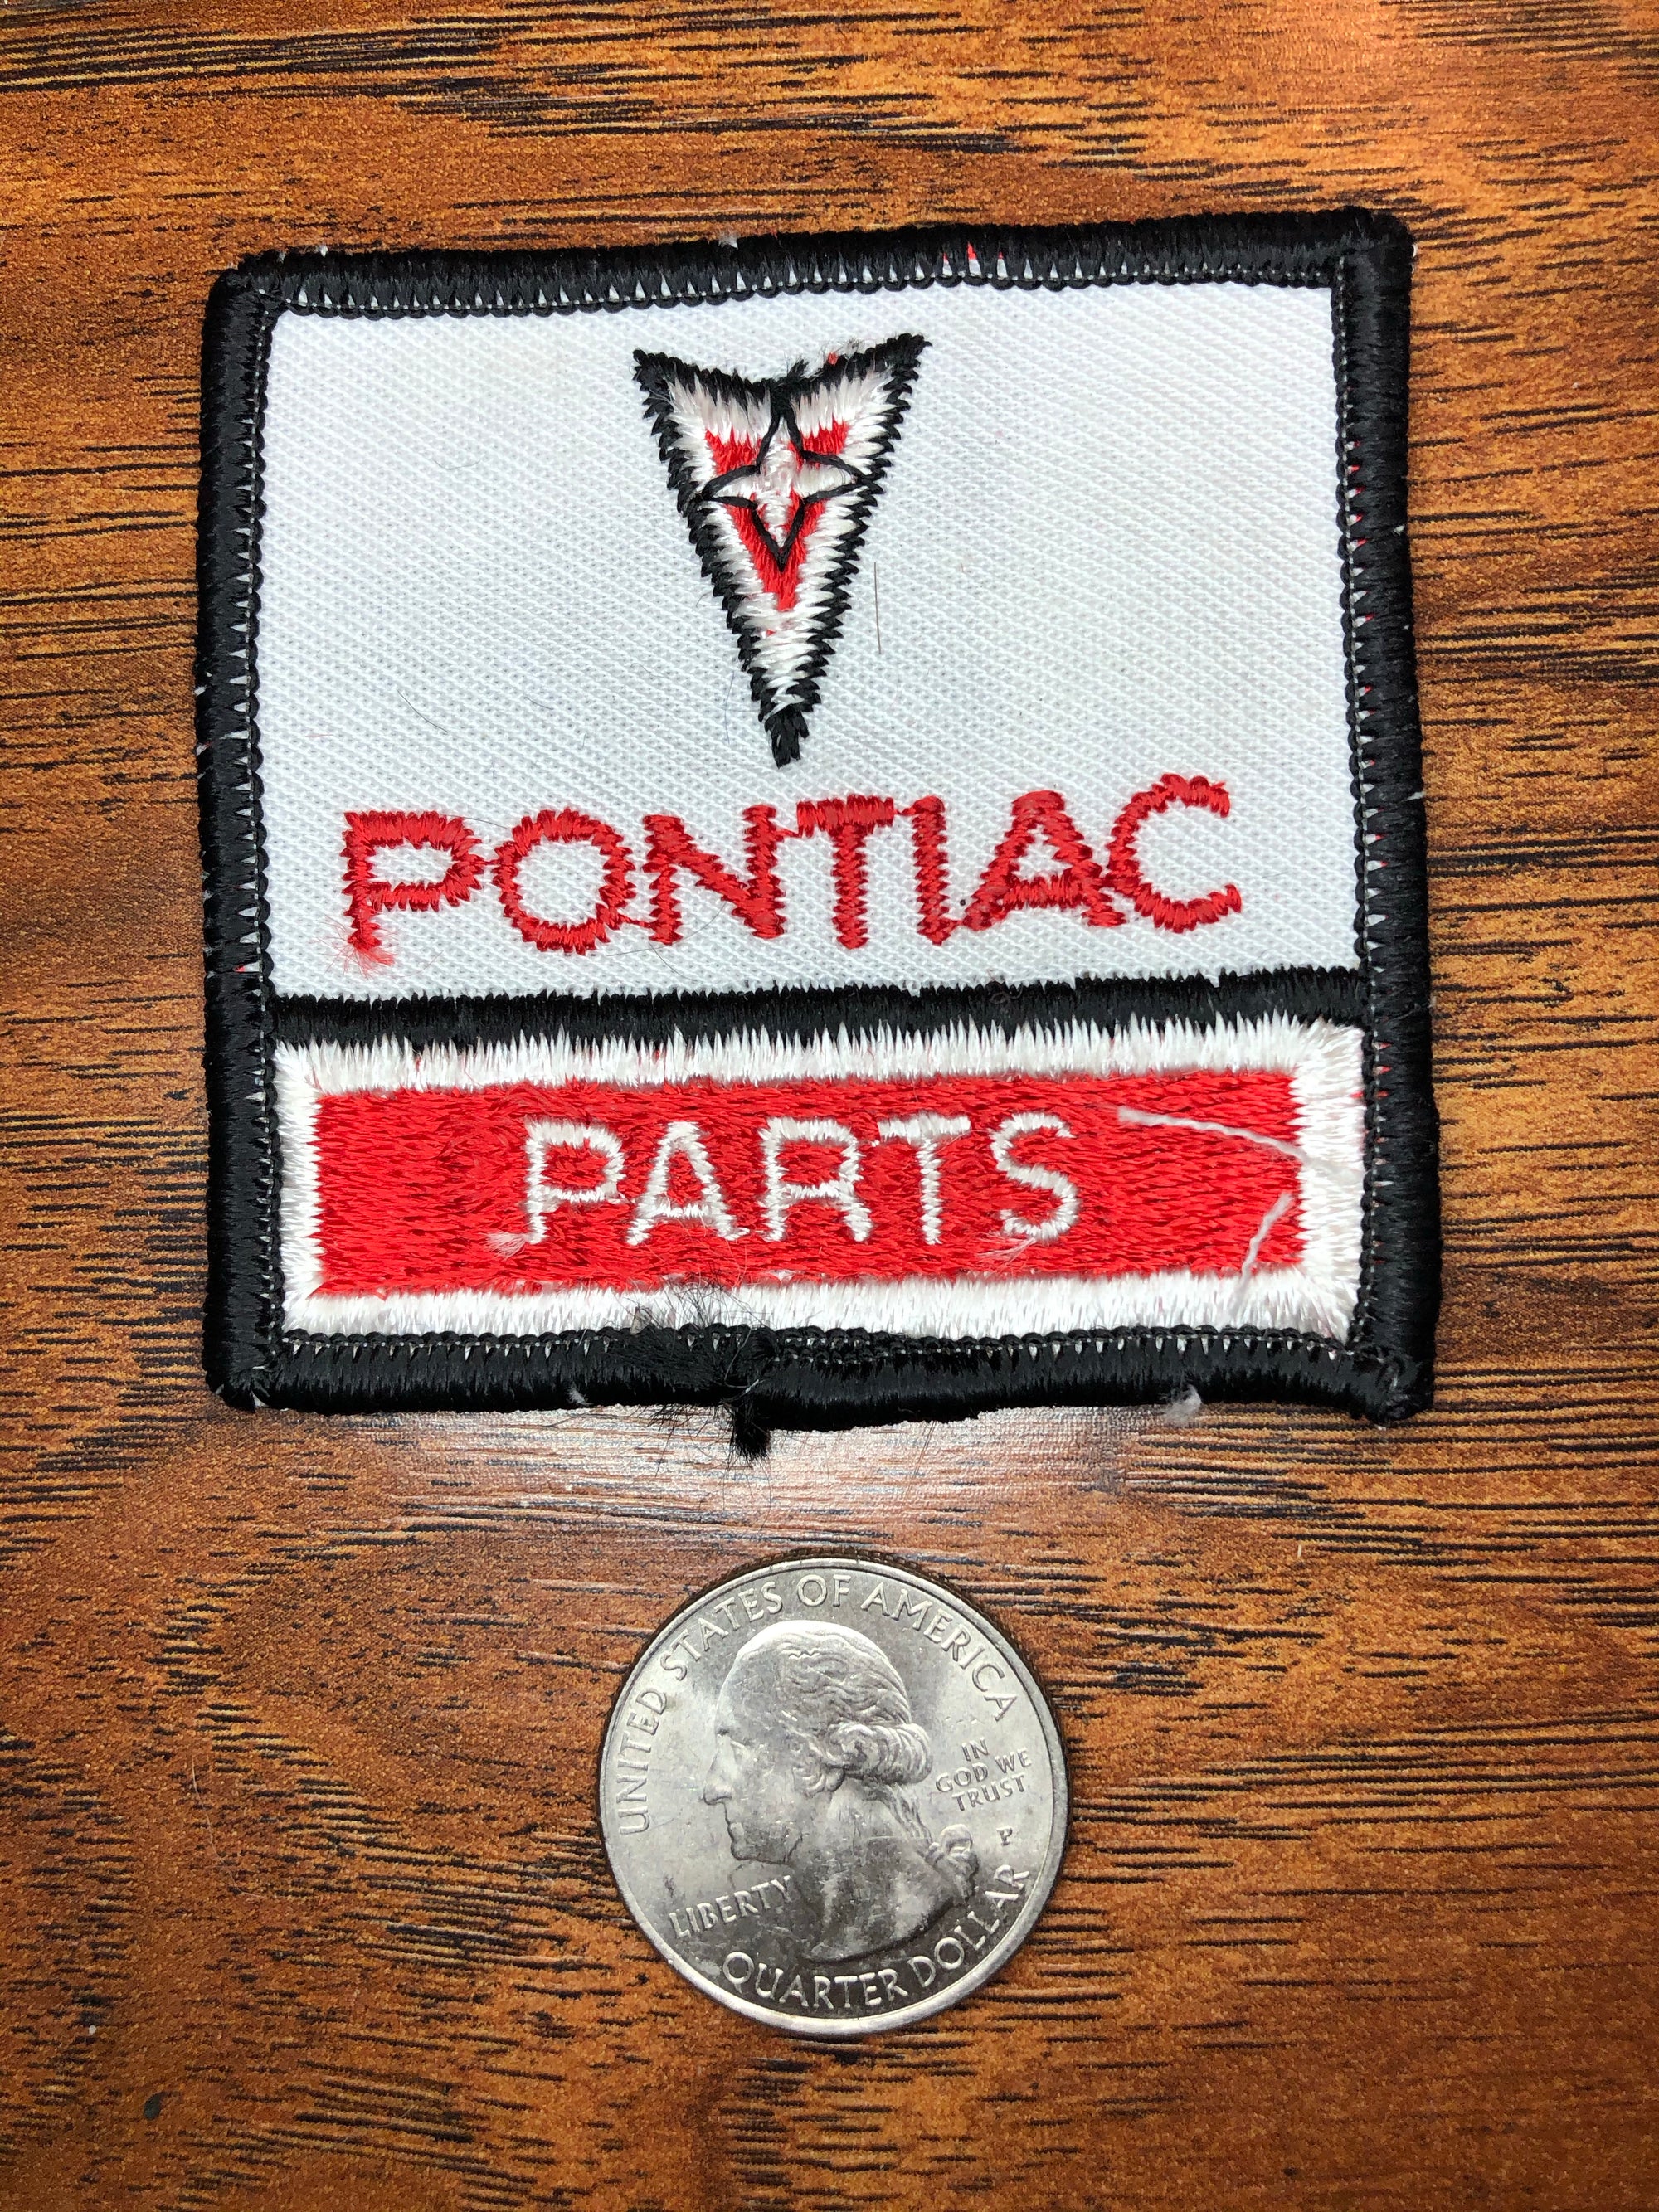 Vintage Pontiac Parts